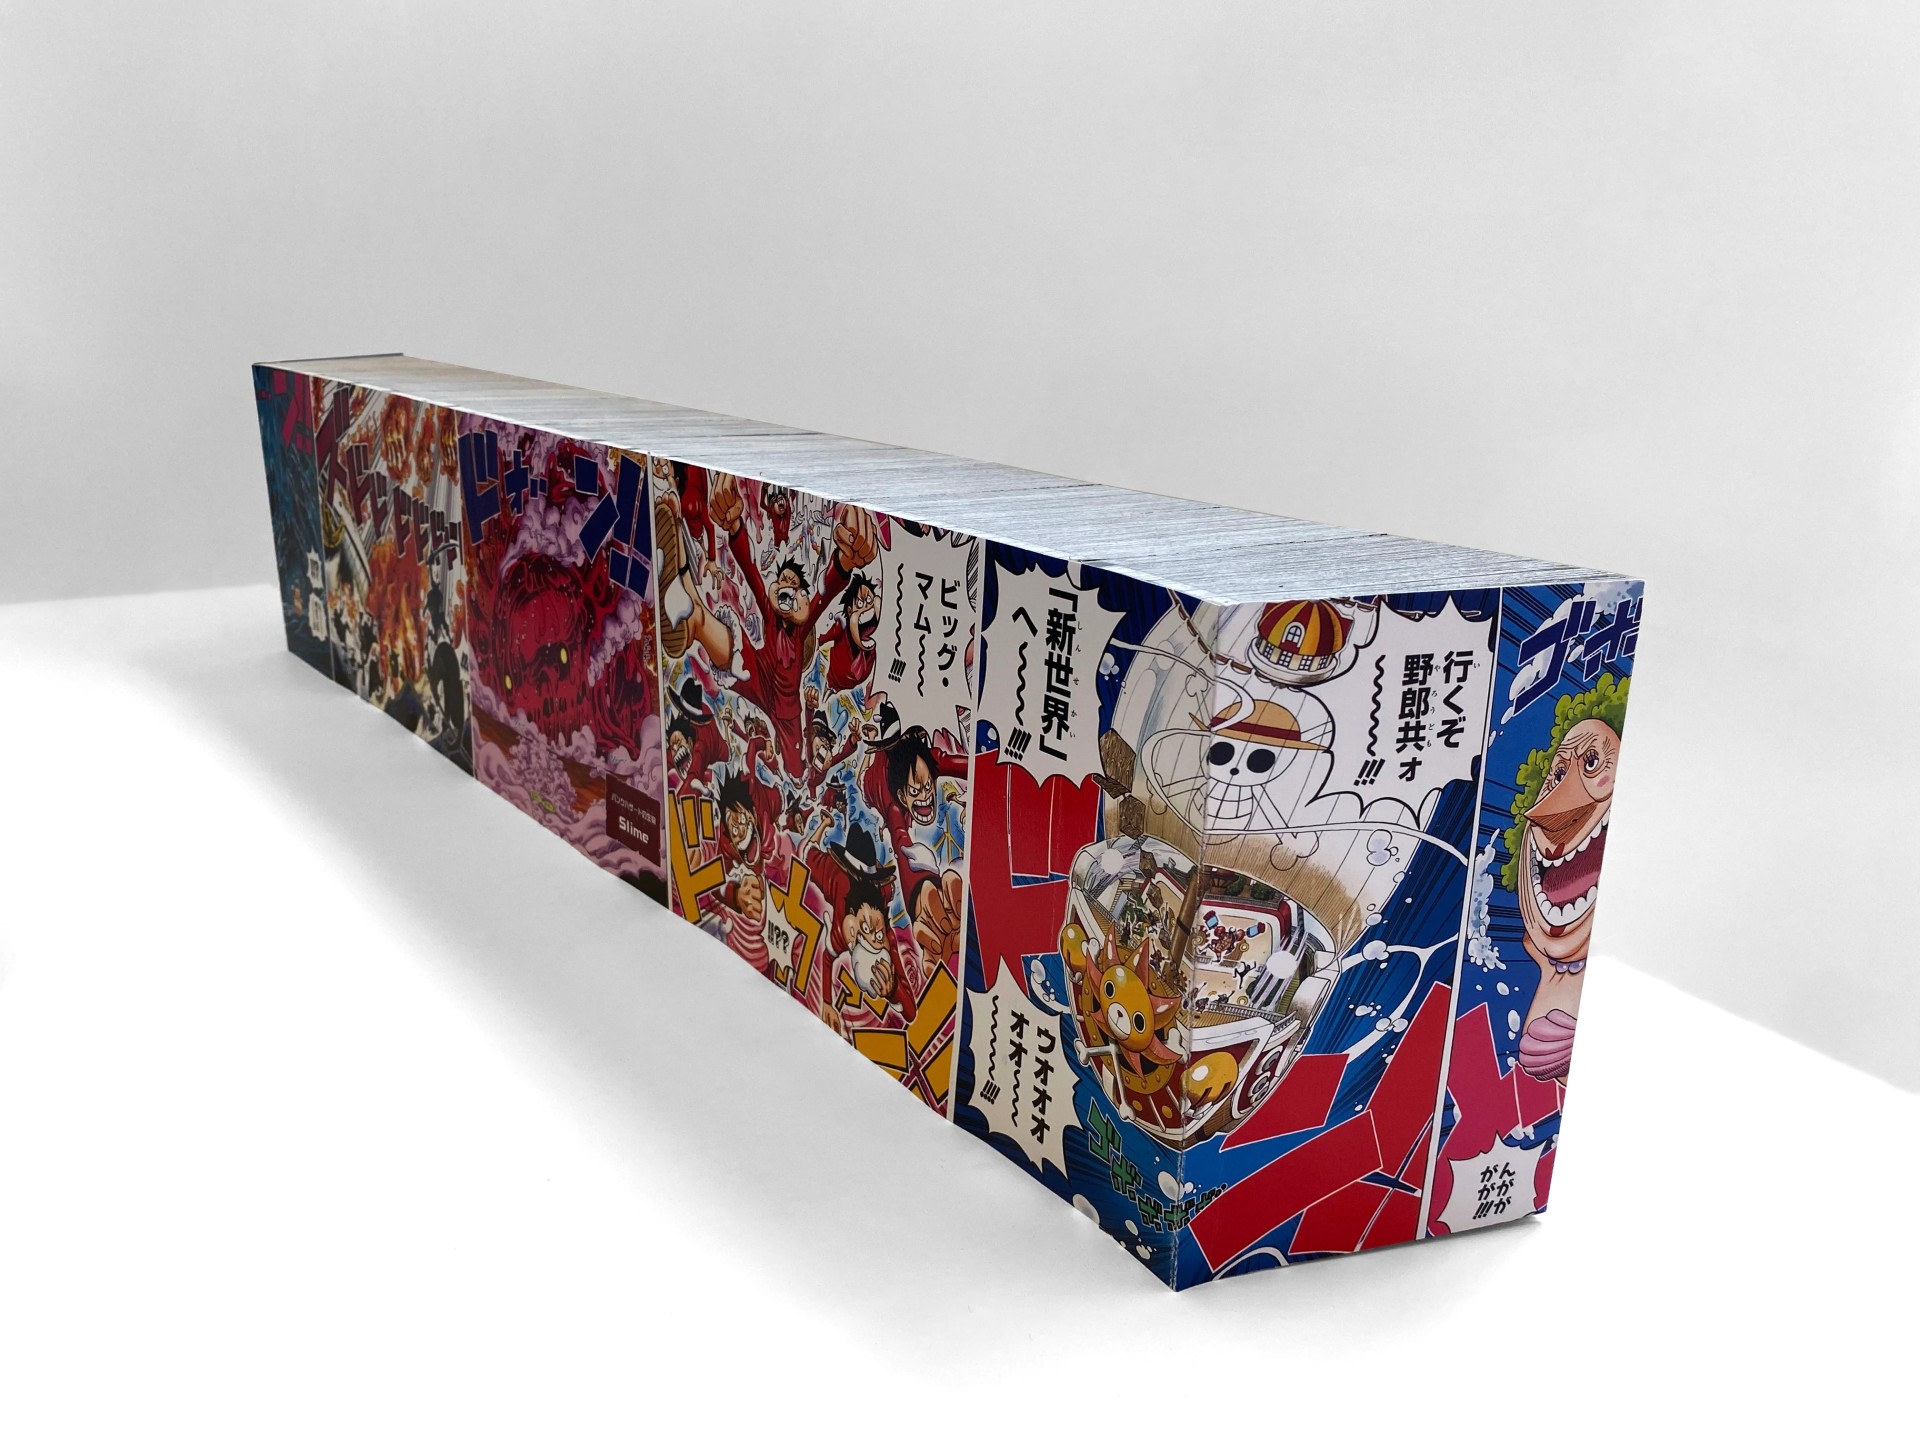 สำนักพิมพ์หนังสือประเทศฝรั่งเศส จัดทำ One Piece รวมเล่มยาวที่สุดในโลกกว่า 21,540 หน้า